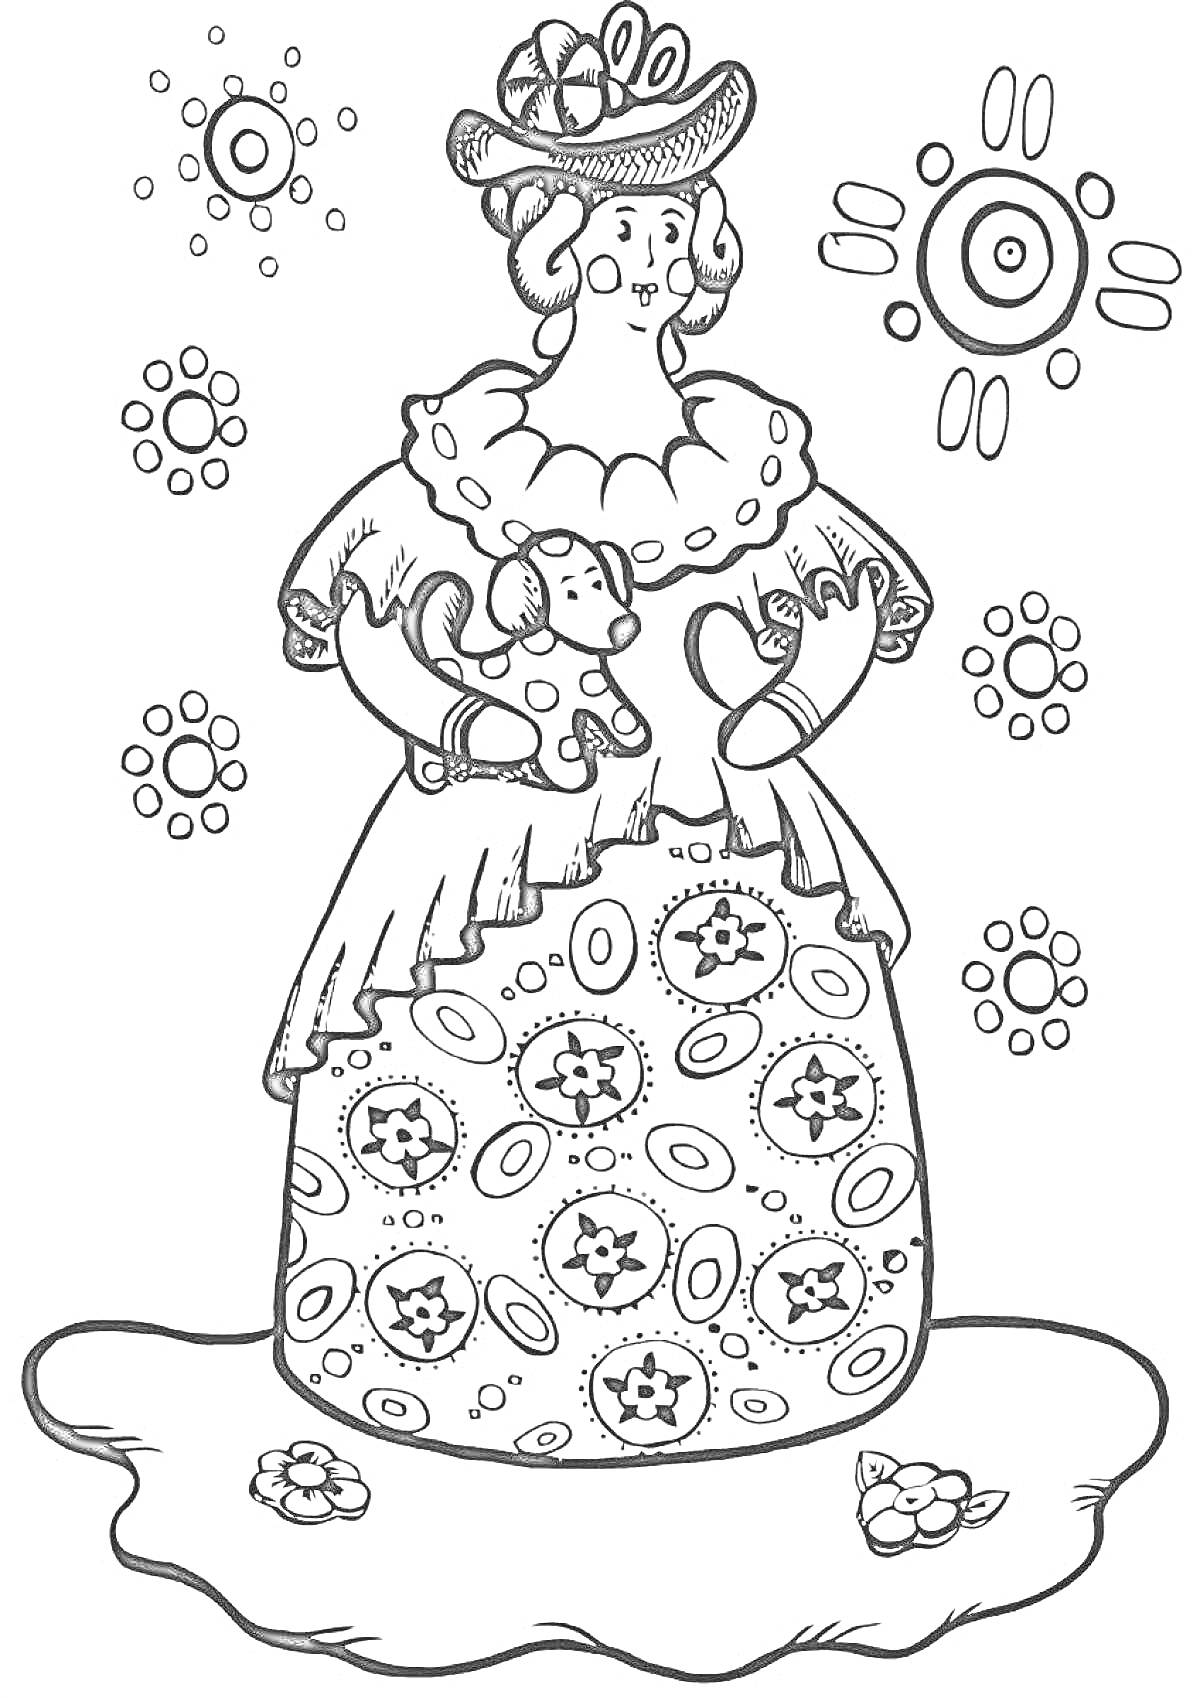 РаскраскаДымковская барышня с собачкой на покрывале с узорами и цветами, вокруг кружочки с узорами